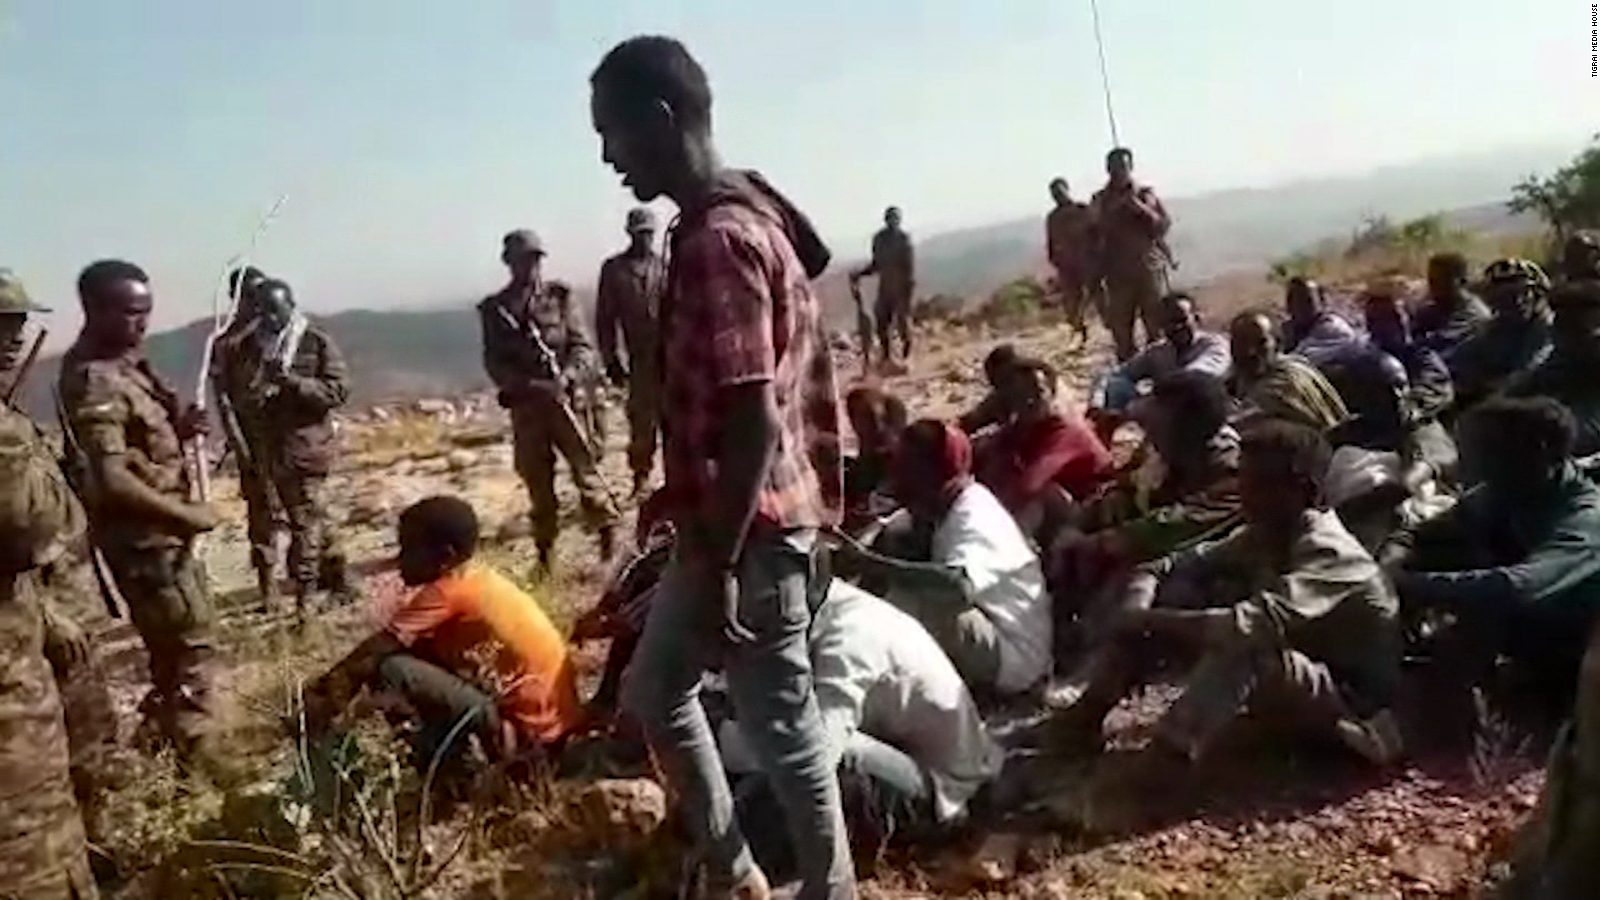 Perturbador video de masacre en Tigray, Etiopía: más de 30 jóvenes se presumen muertos en brutal ejecución extrajudicial | Video | CNN 